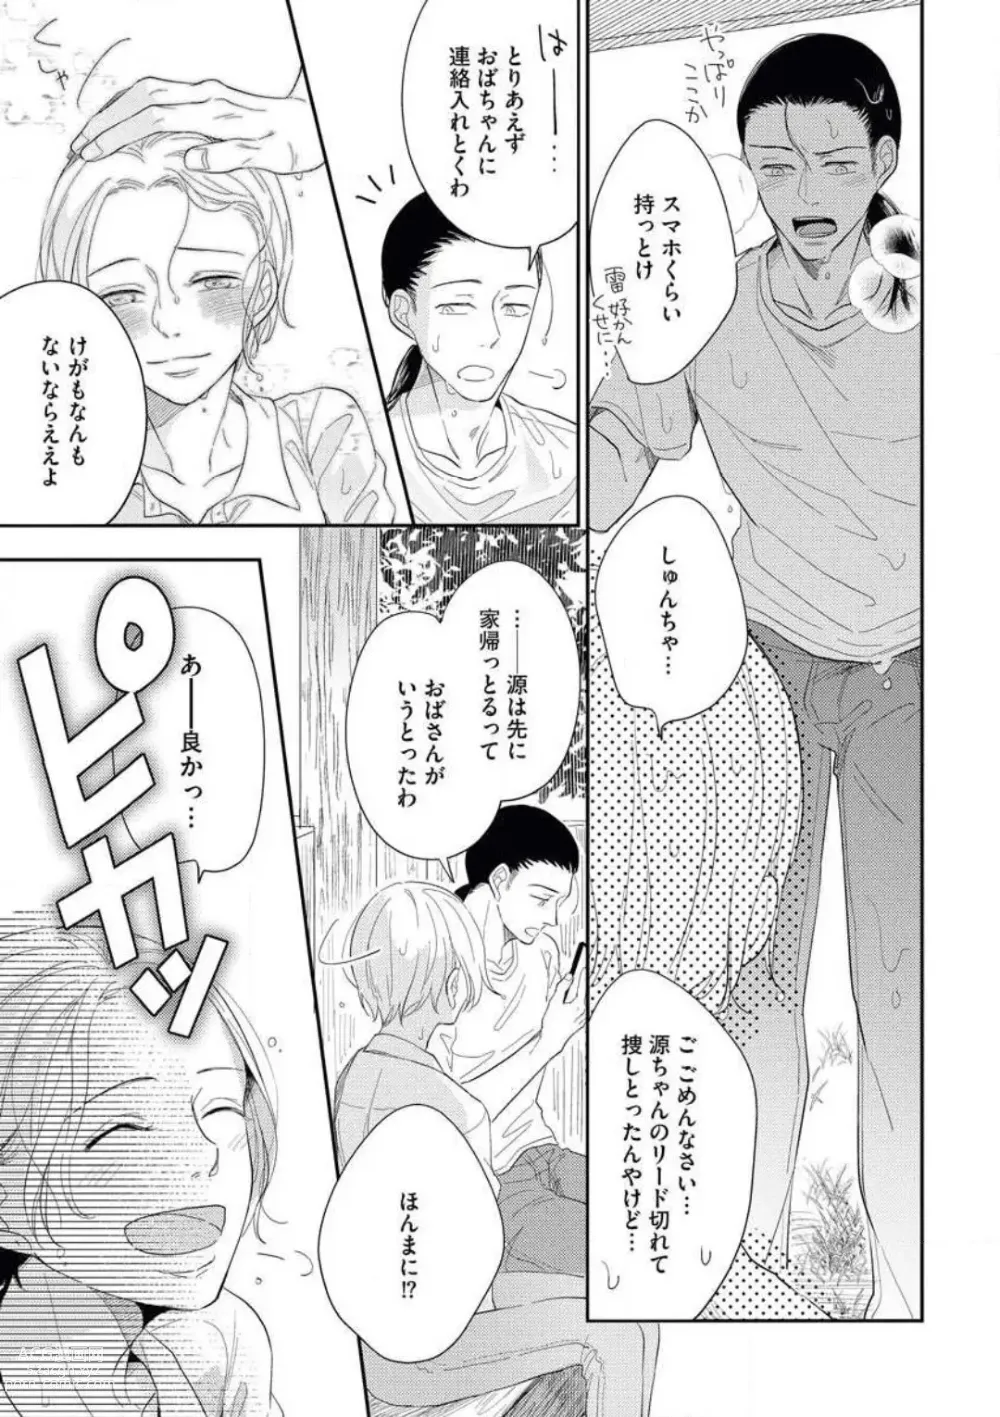 Page 25 of manga Zutto Matteru' Osananajimi to Gamandekinai Saikai Etchi